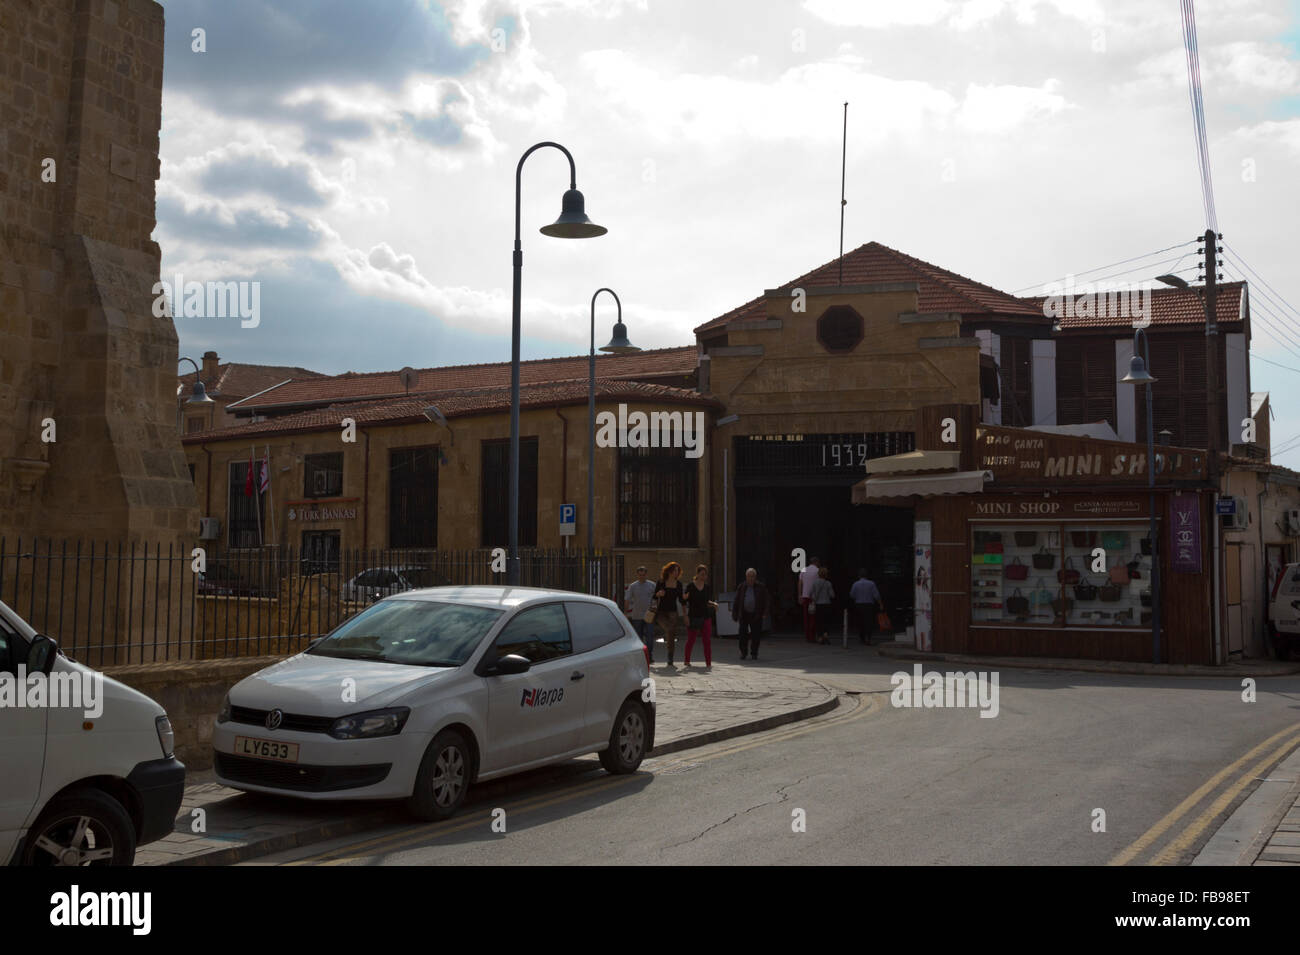 Entrée du marché municipal, bazar, dans la vieille ville de Nicosie, Lefkosa, République turque de Chypre du Nord Banque D'Images